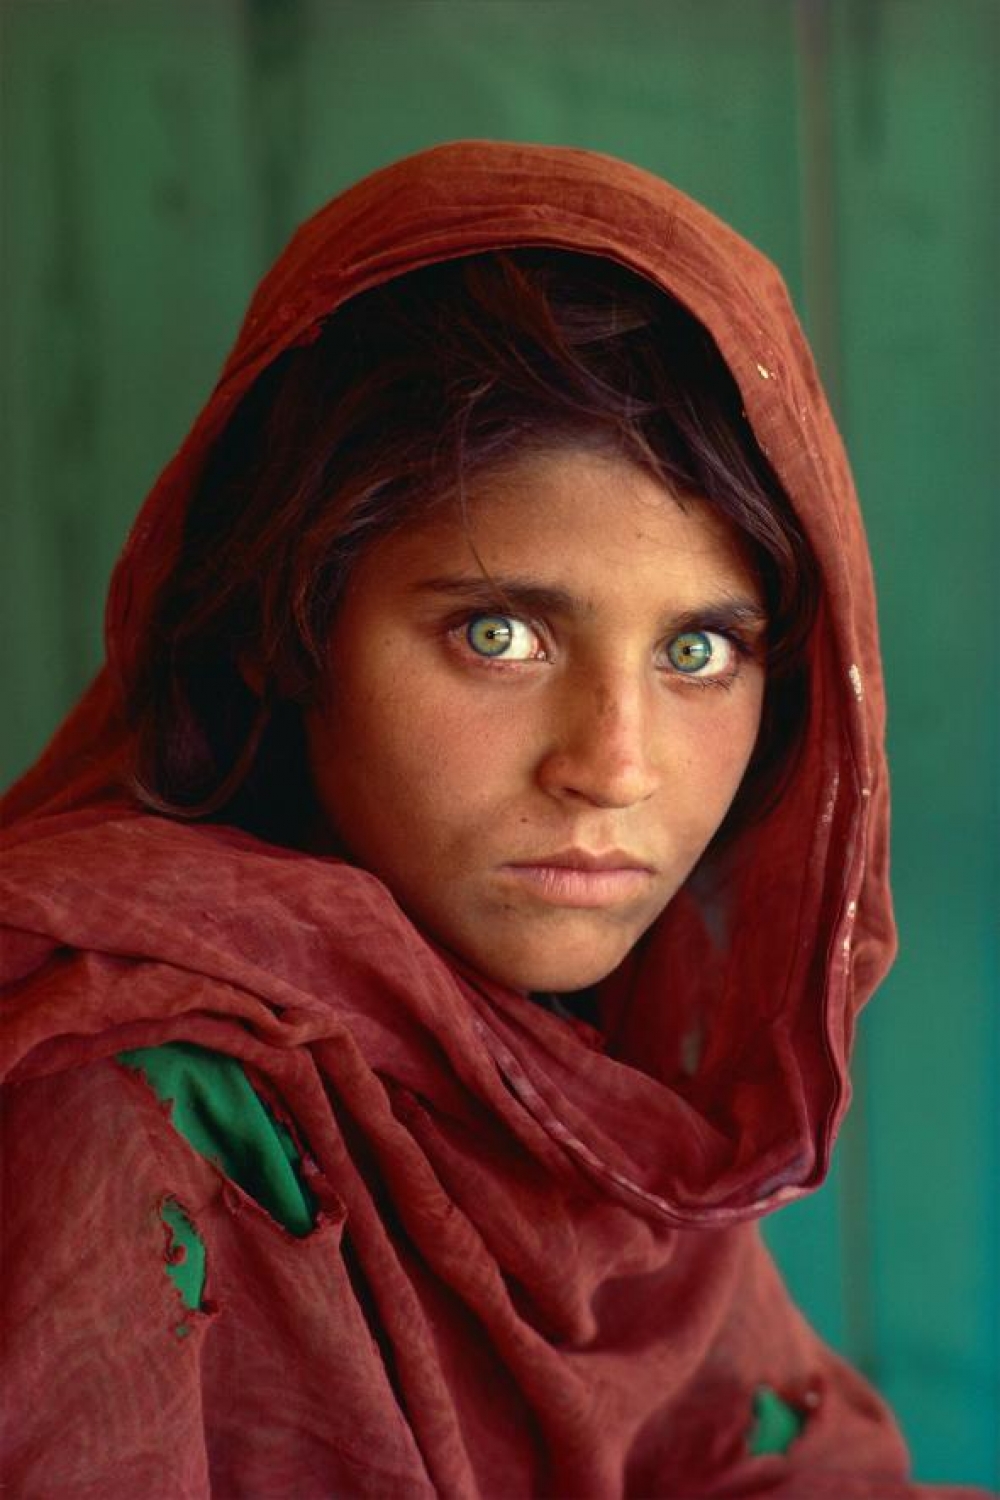 被控偽造證件國家地理雜誌封面 阿富汗女孩 將獲保釋 上報 國際